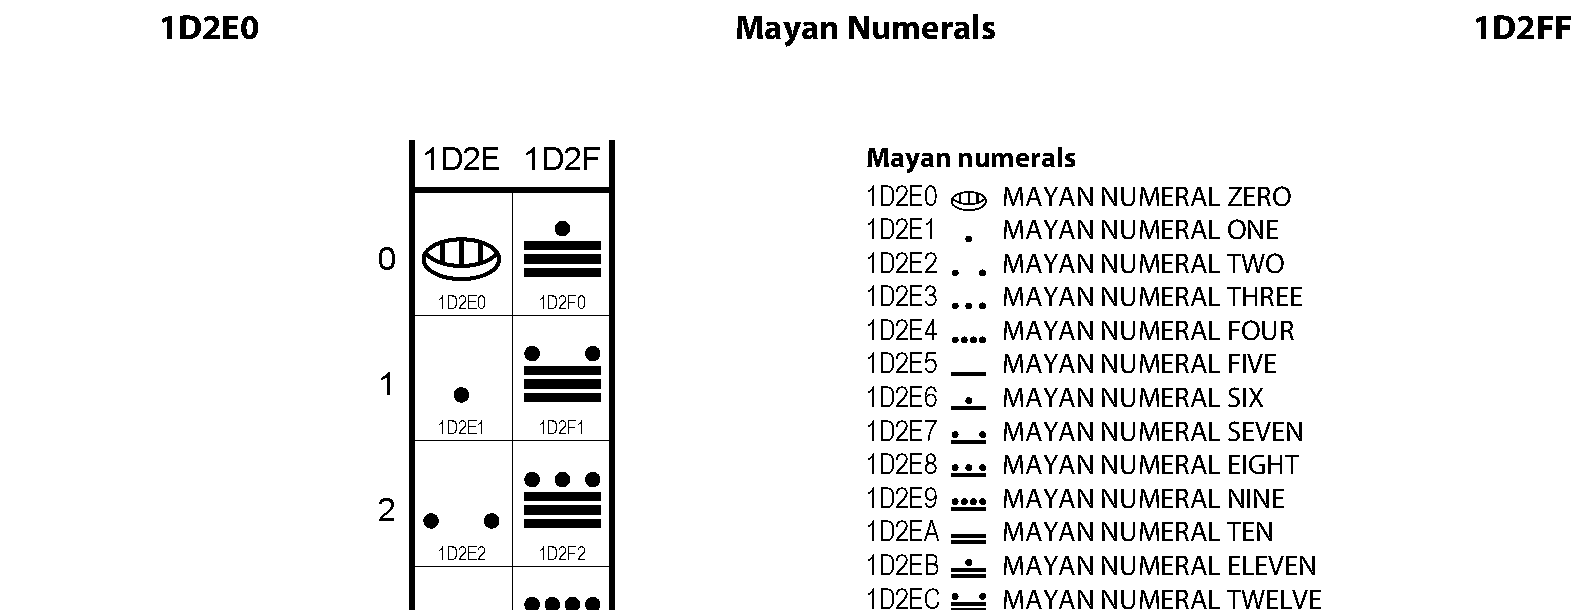 Unicode - Mayan Numerals